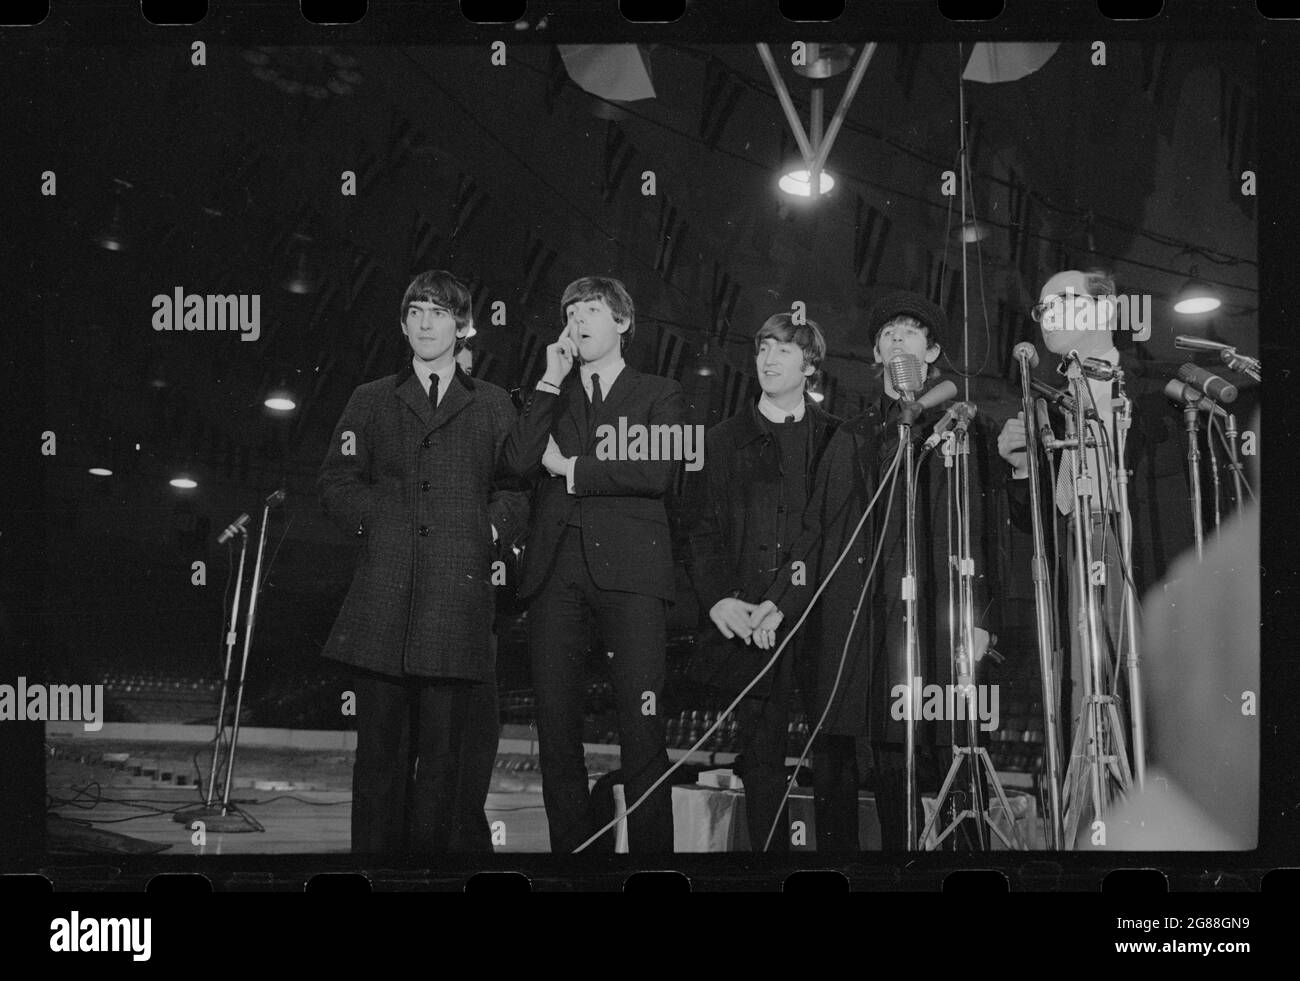 Les Beatles arrivent et conférence de presse (rock & rollers britanniques) Washington, 11 février 1964. Trikosko, Marion S., photographe. Banque D'Images